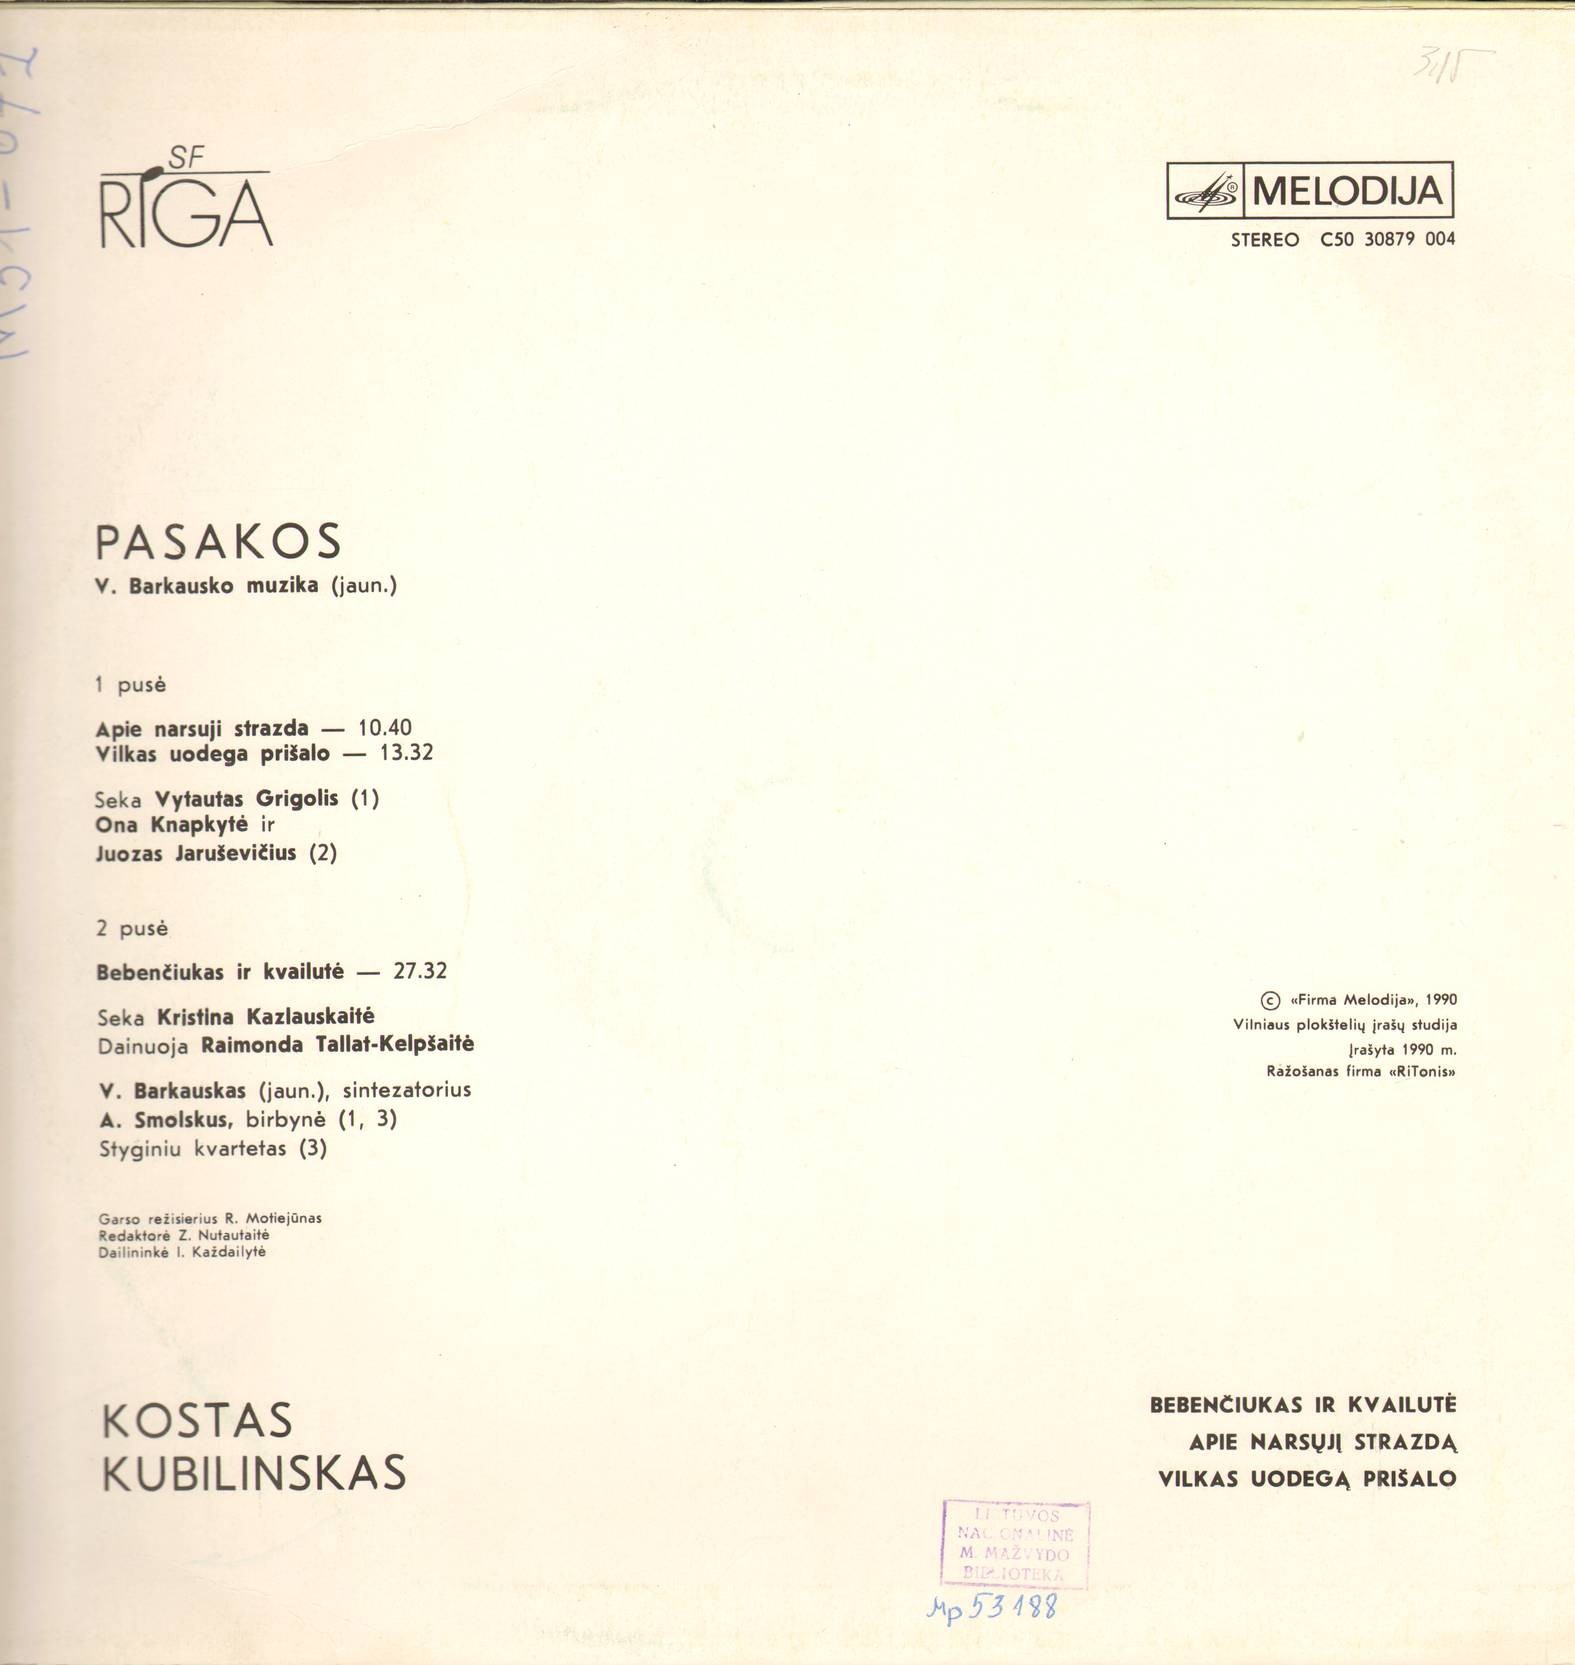 К. КУБИЛИНСКАС (1923-1962): Сказки (музыка В. Баркаускаса-младшего).